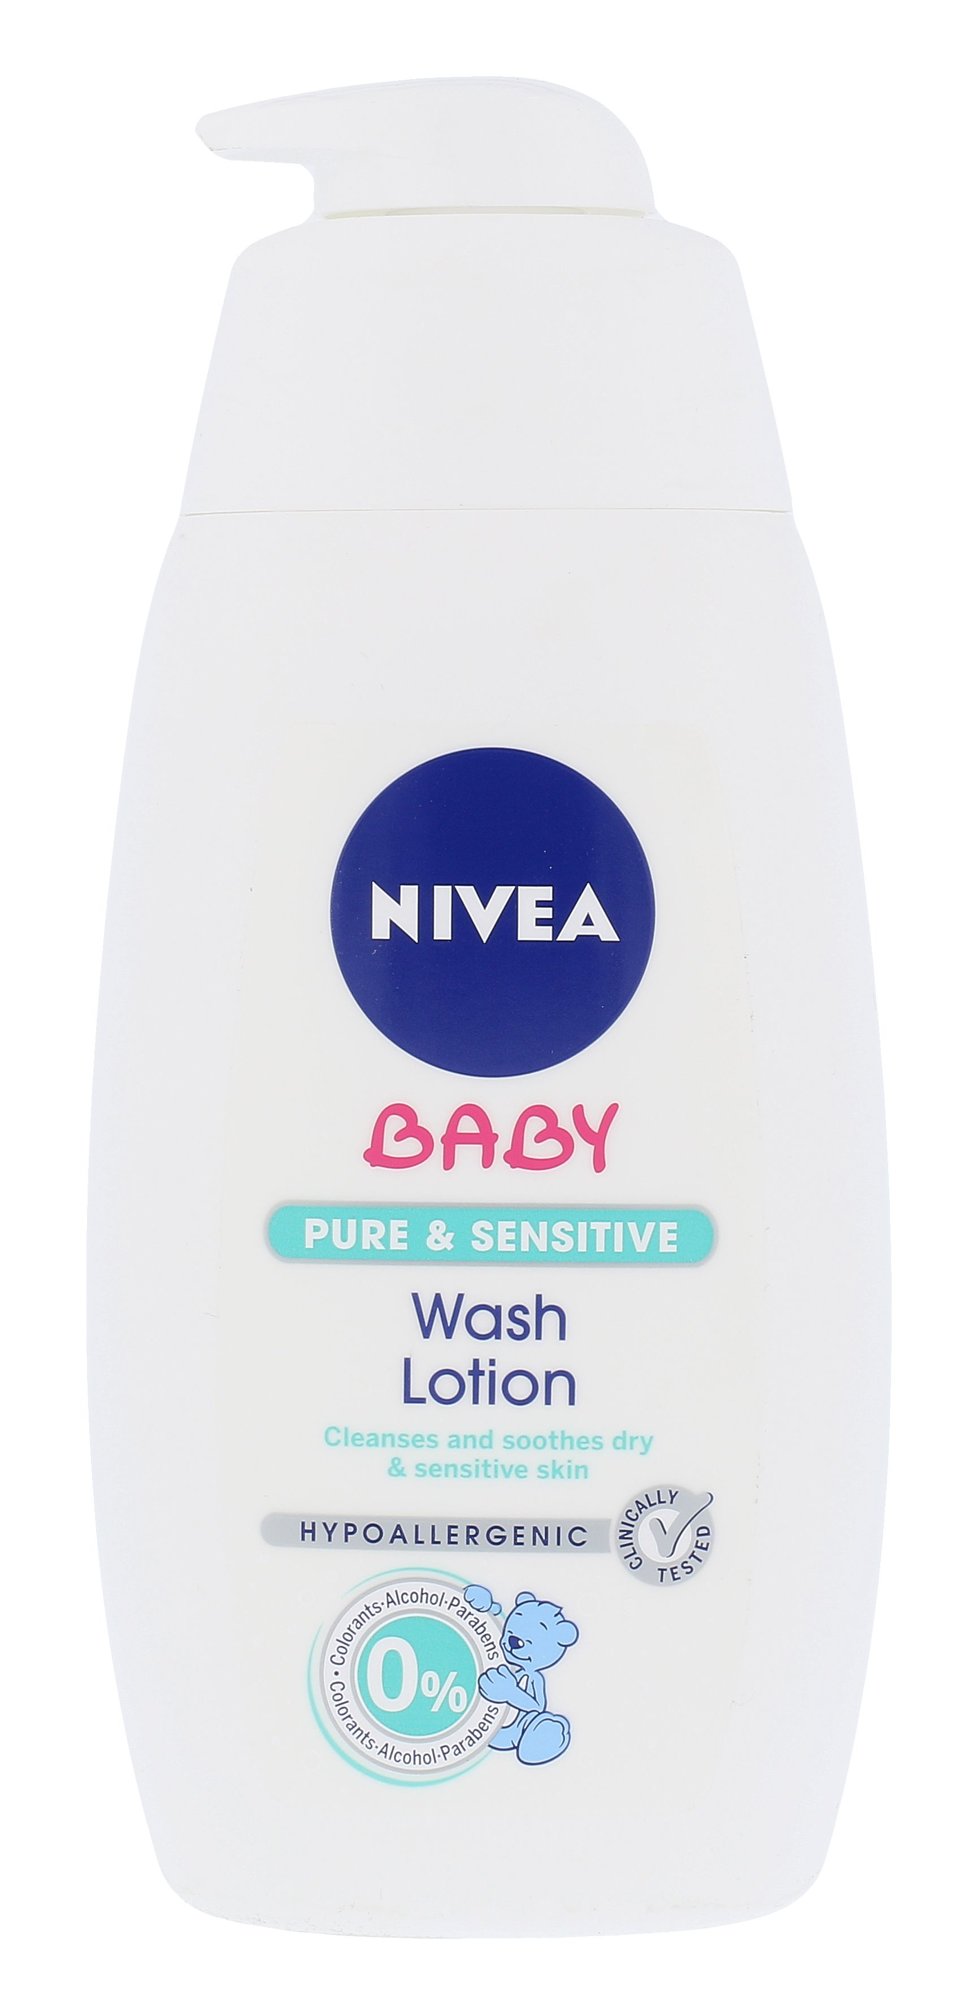 Nivea Baby Pure & Sensitive Wash Lotion veido gelis